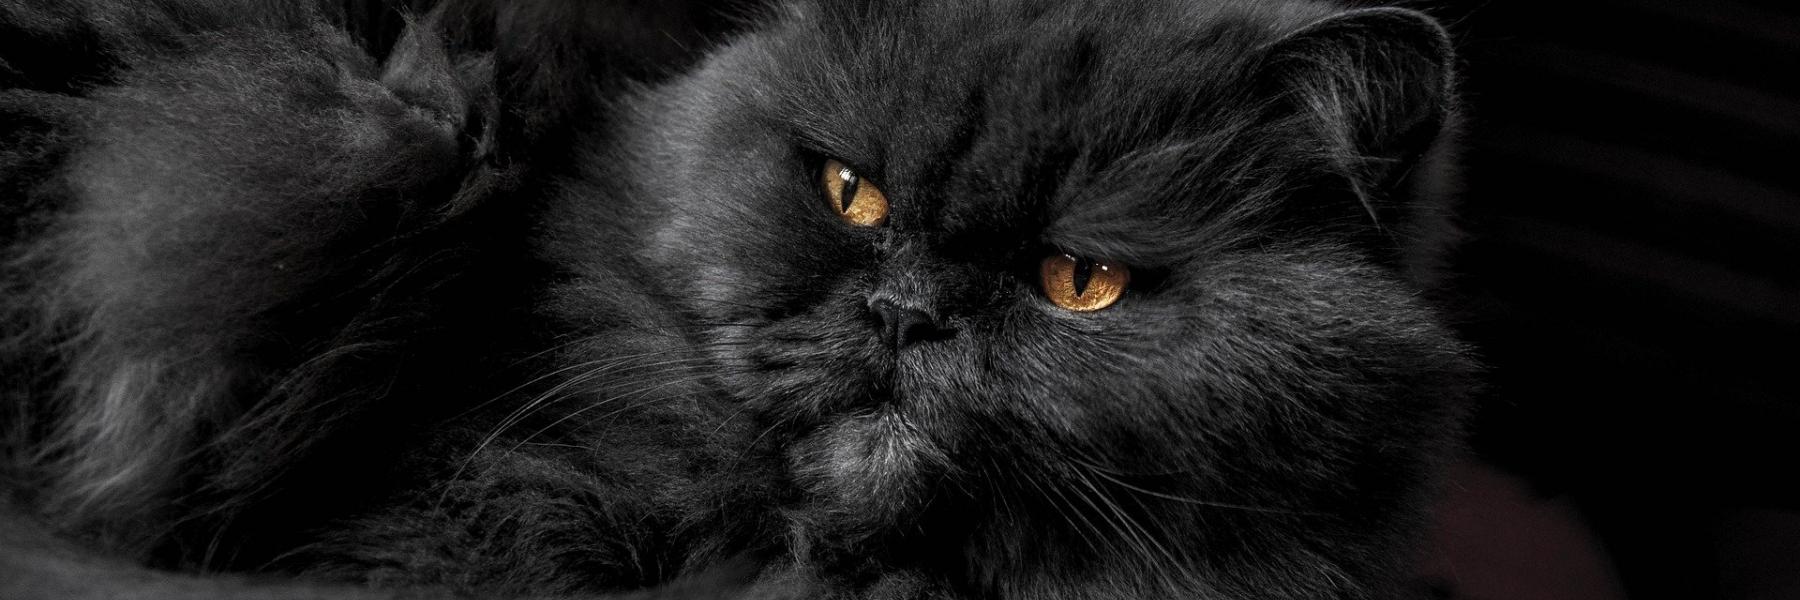 सपने में काली बिल्ली देखना